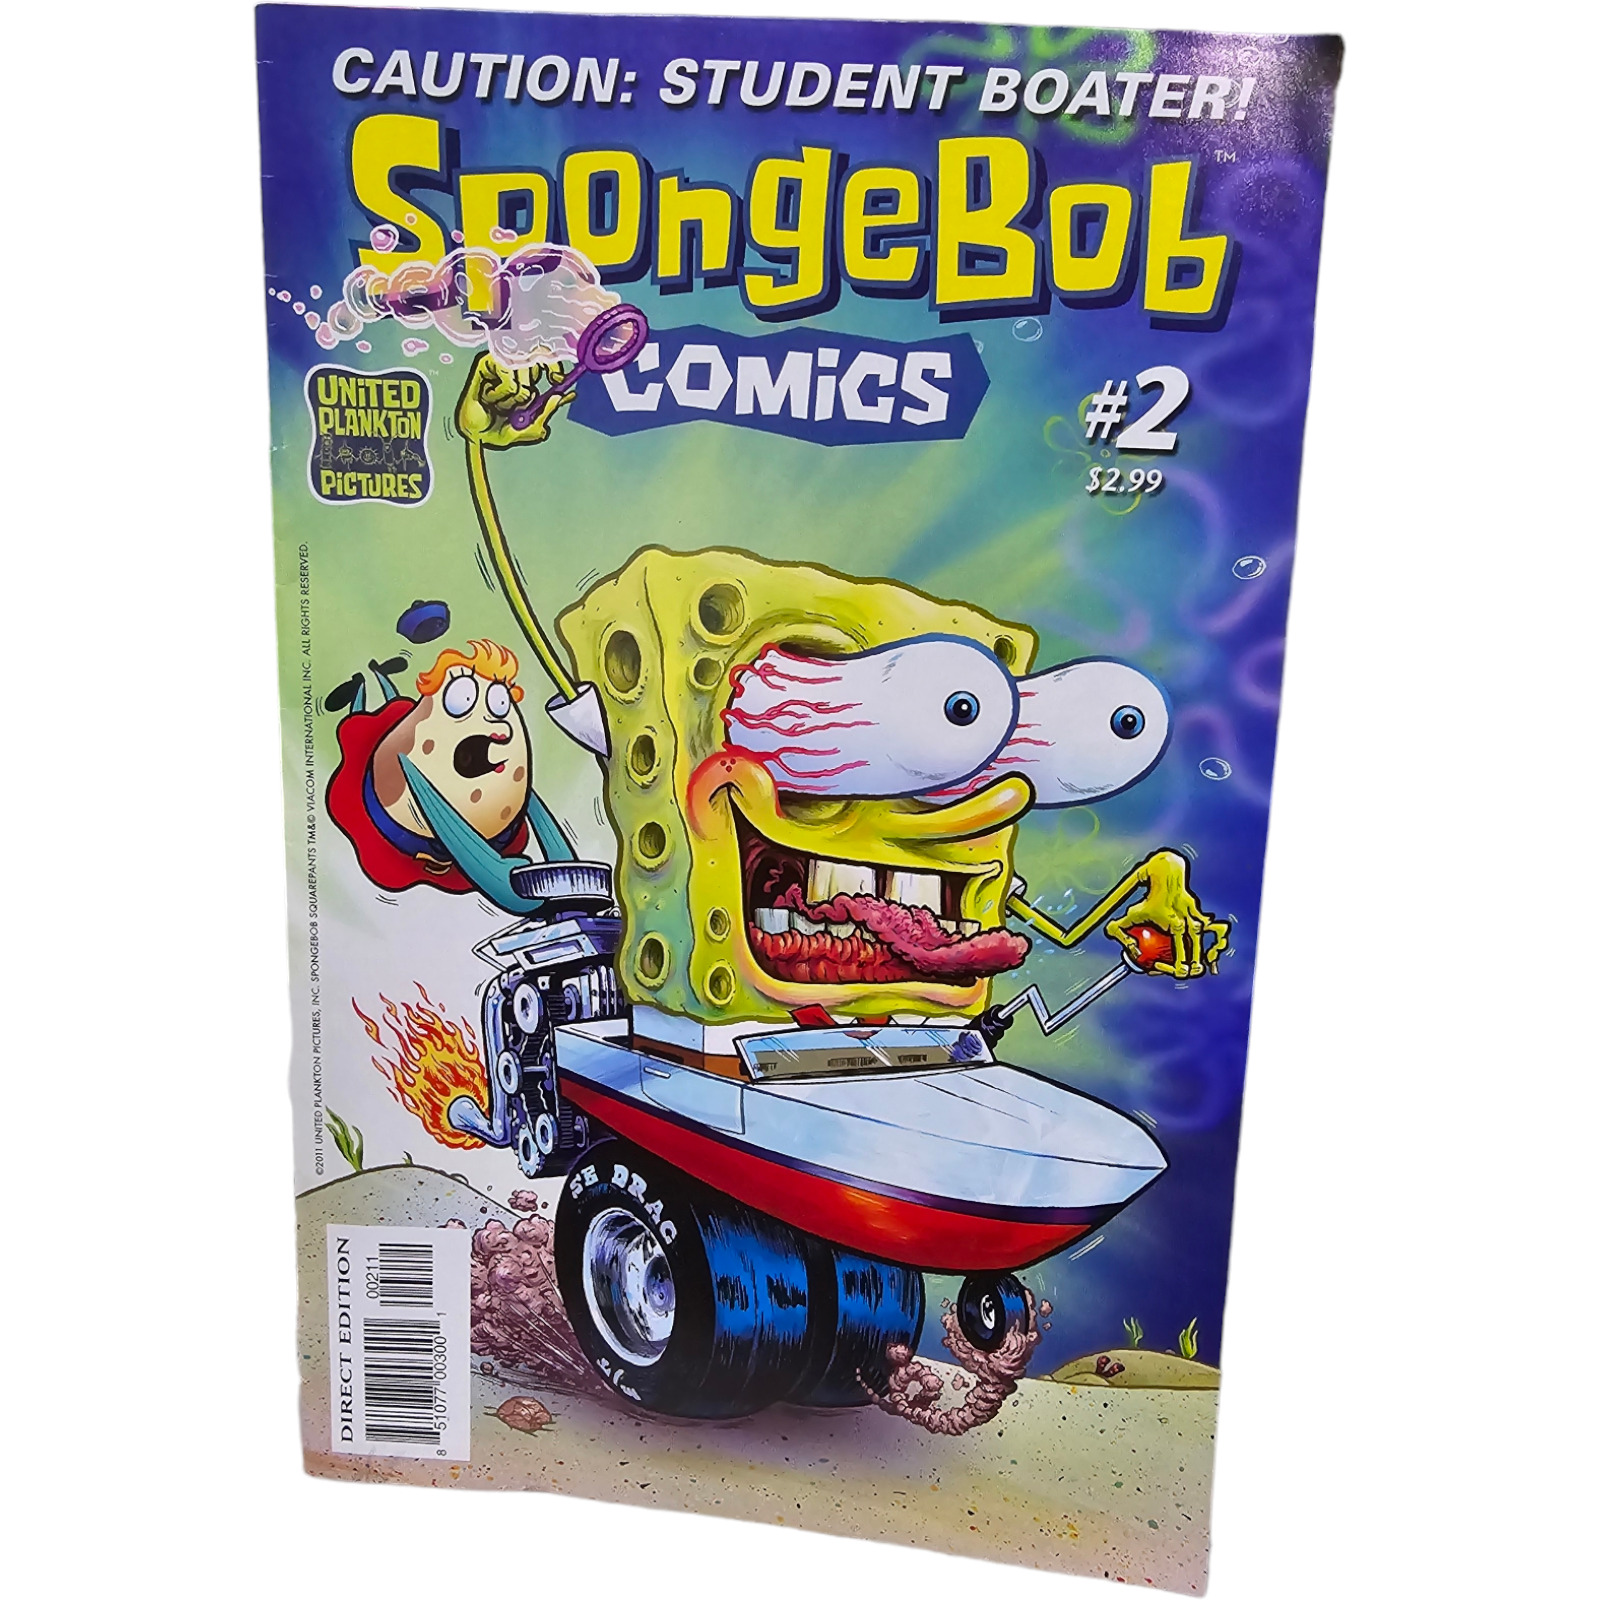 Spongebob Comic #2  United Plankton Pictures RARE  NM